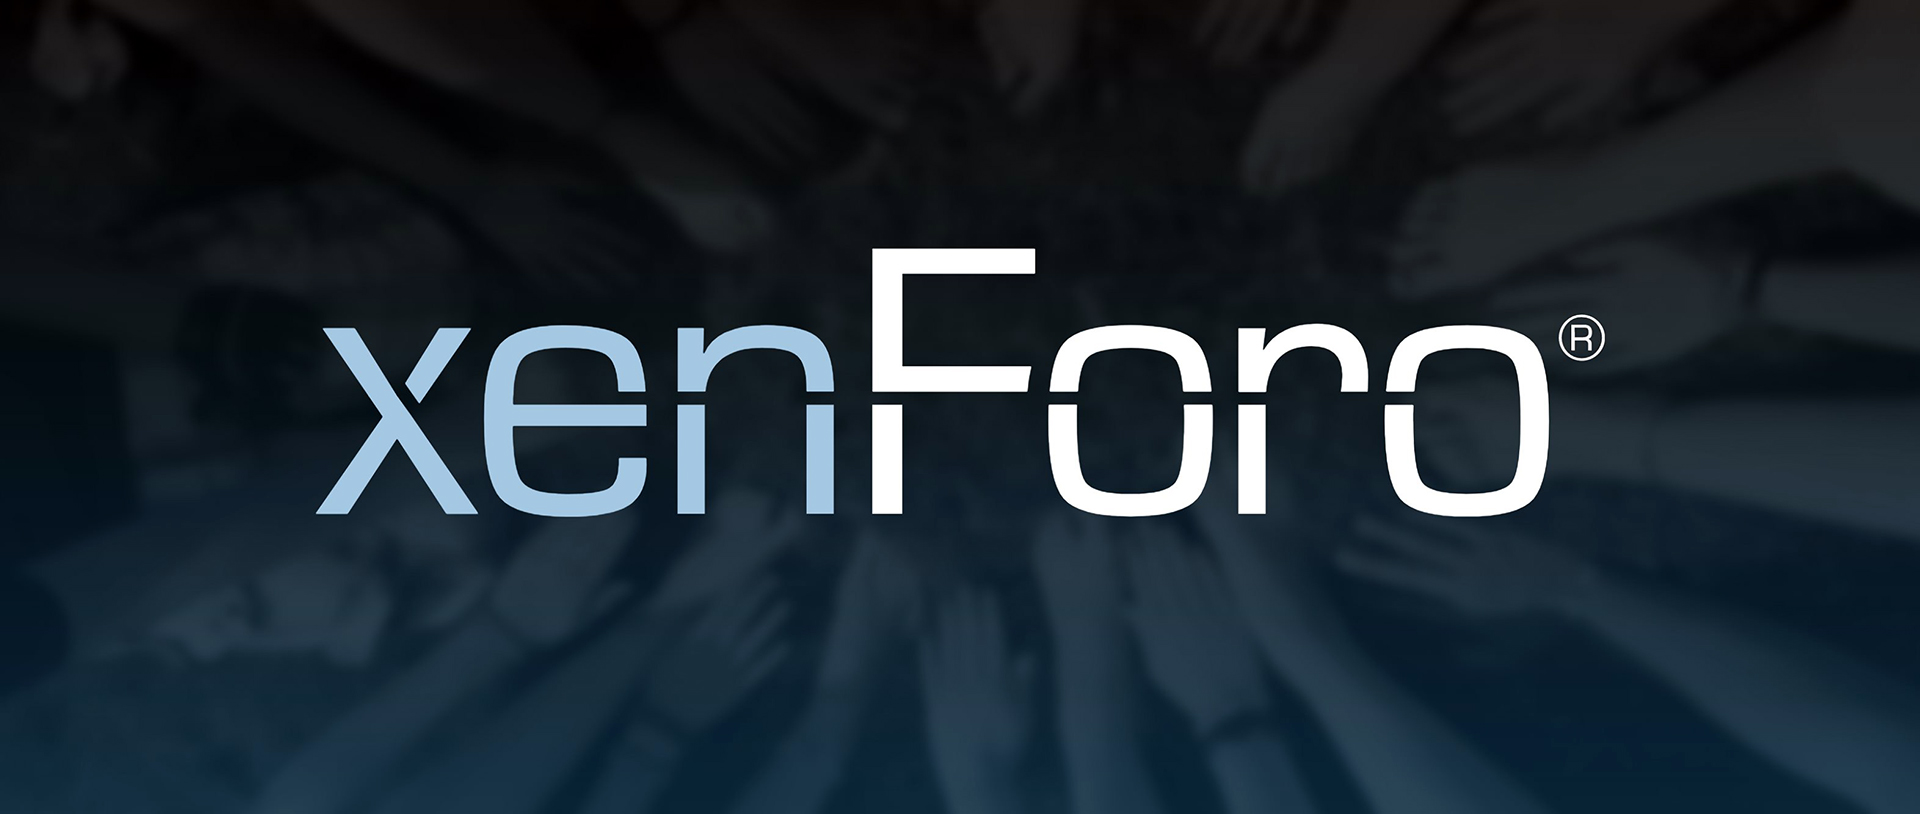 XenForo Nedir? XenForo'nun Kullanım Alanları Nelerdir?